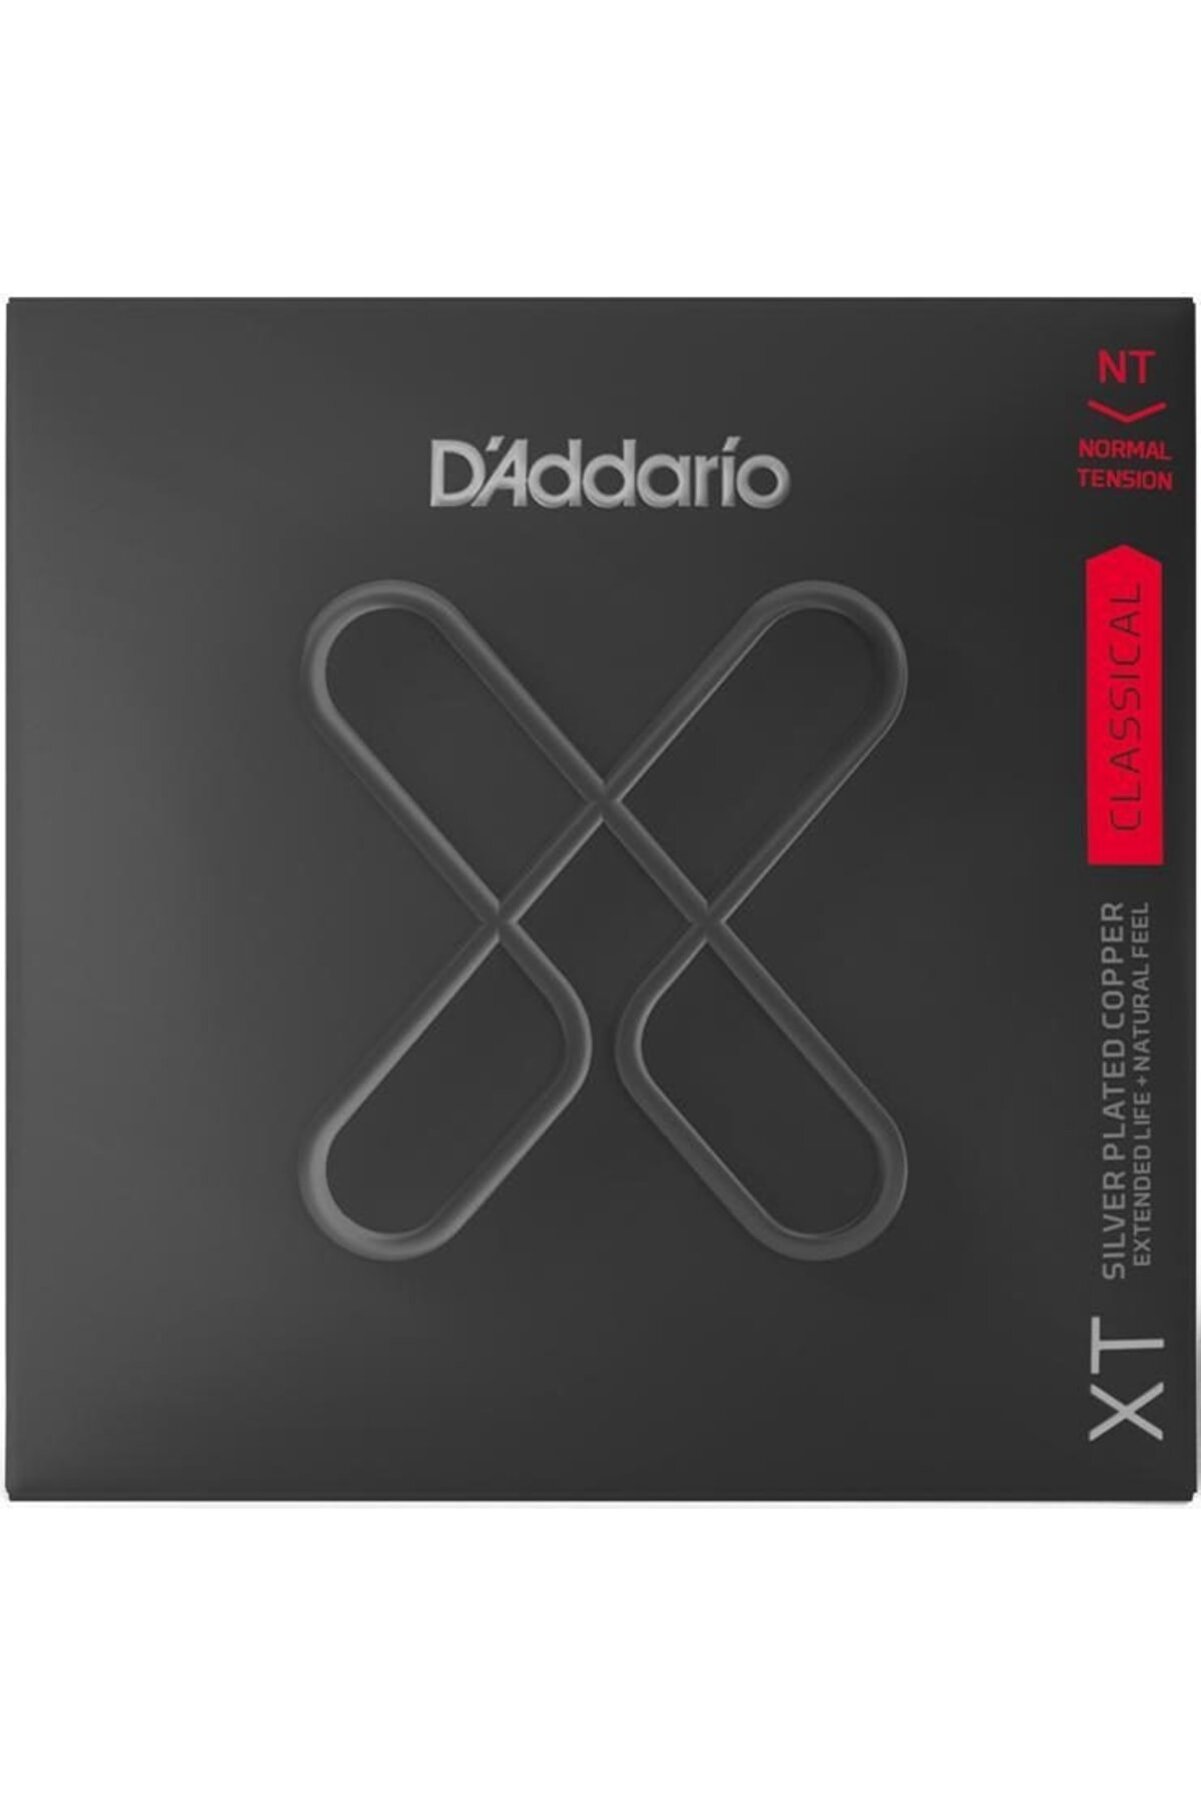 D'Addario Klasik Gitar Tel Seti, Nylon Core, Sılverplated